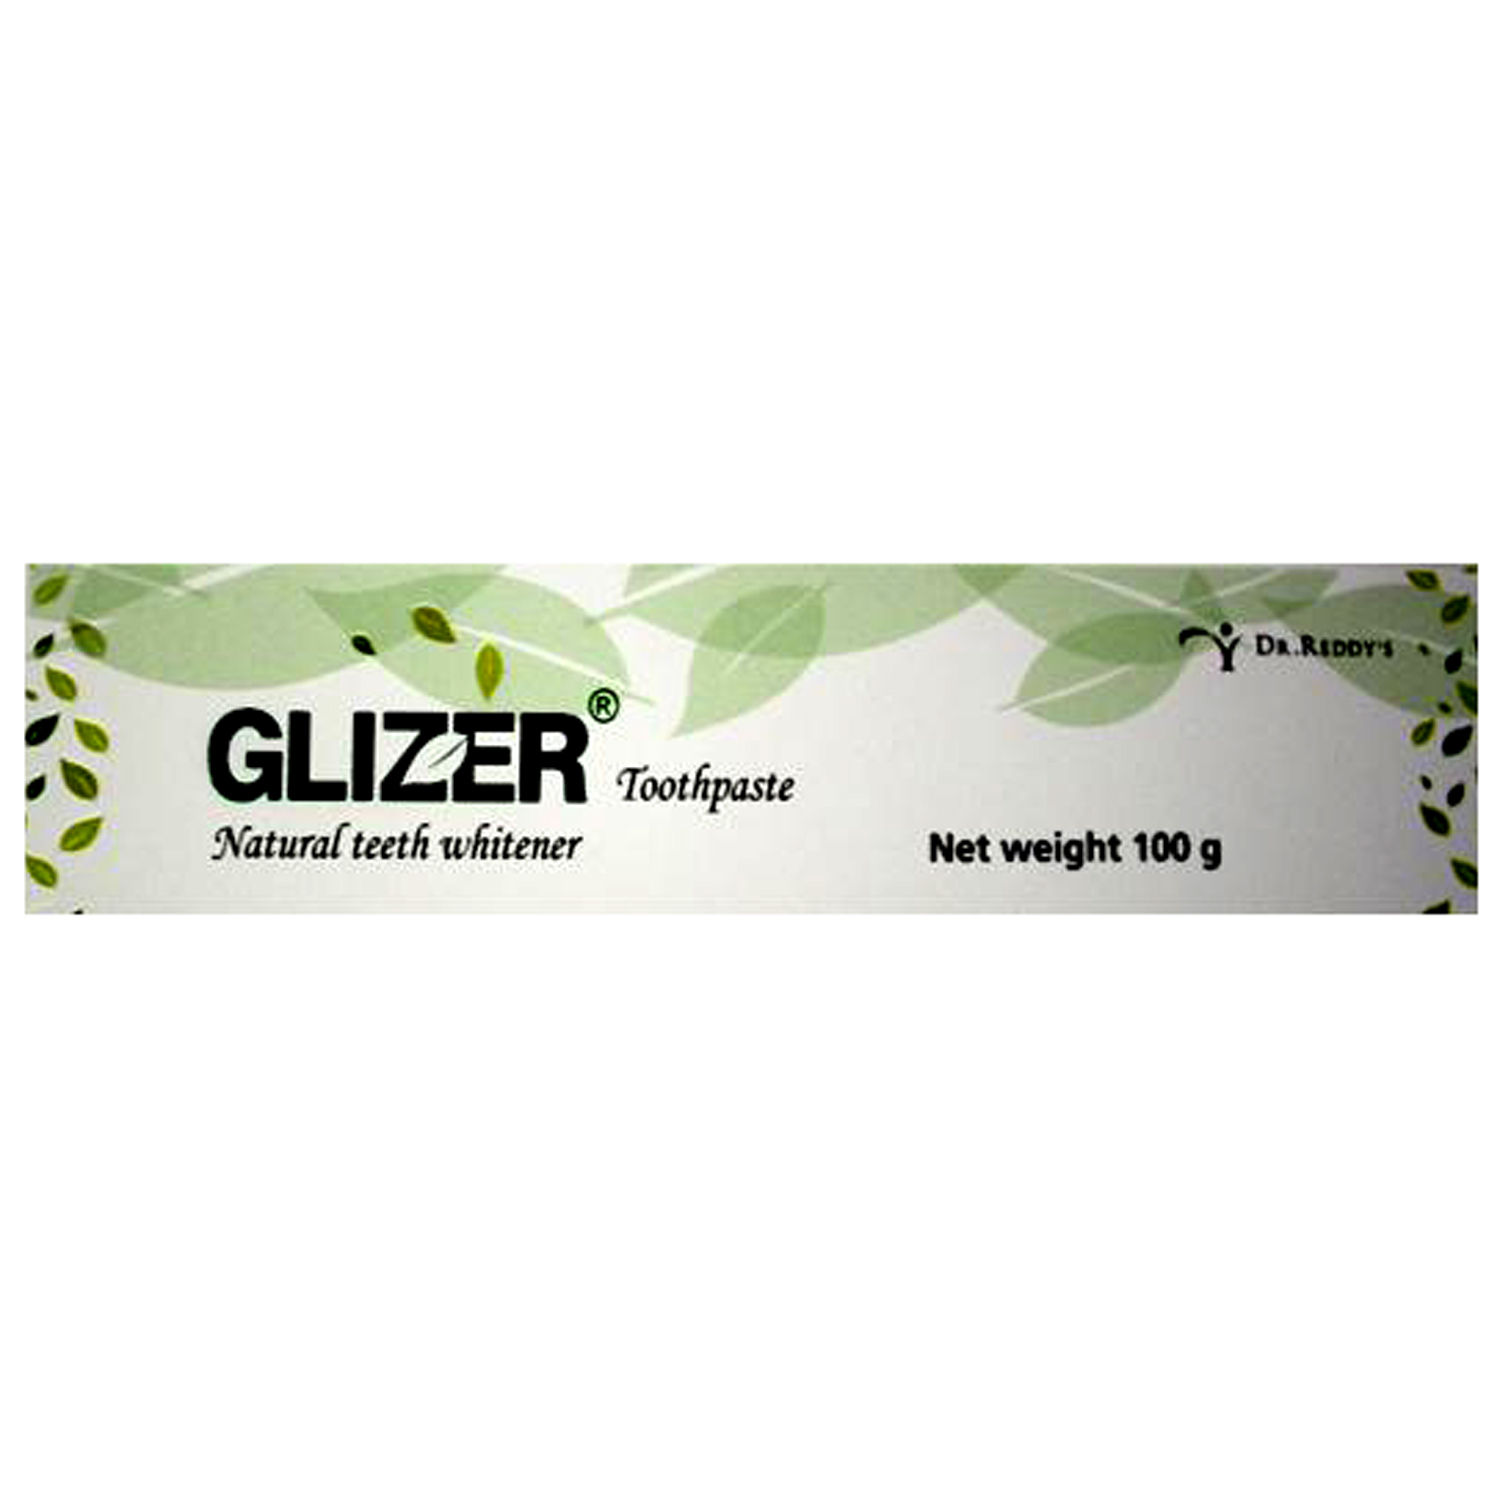 Buy Glizer Toothpaste, 100 gm Online